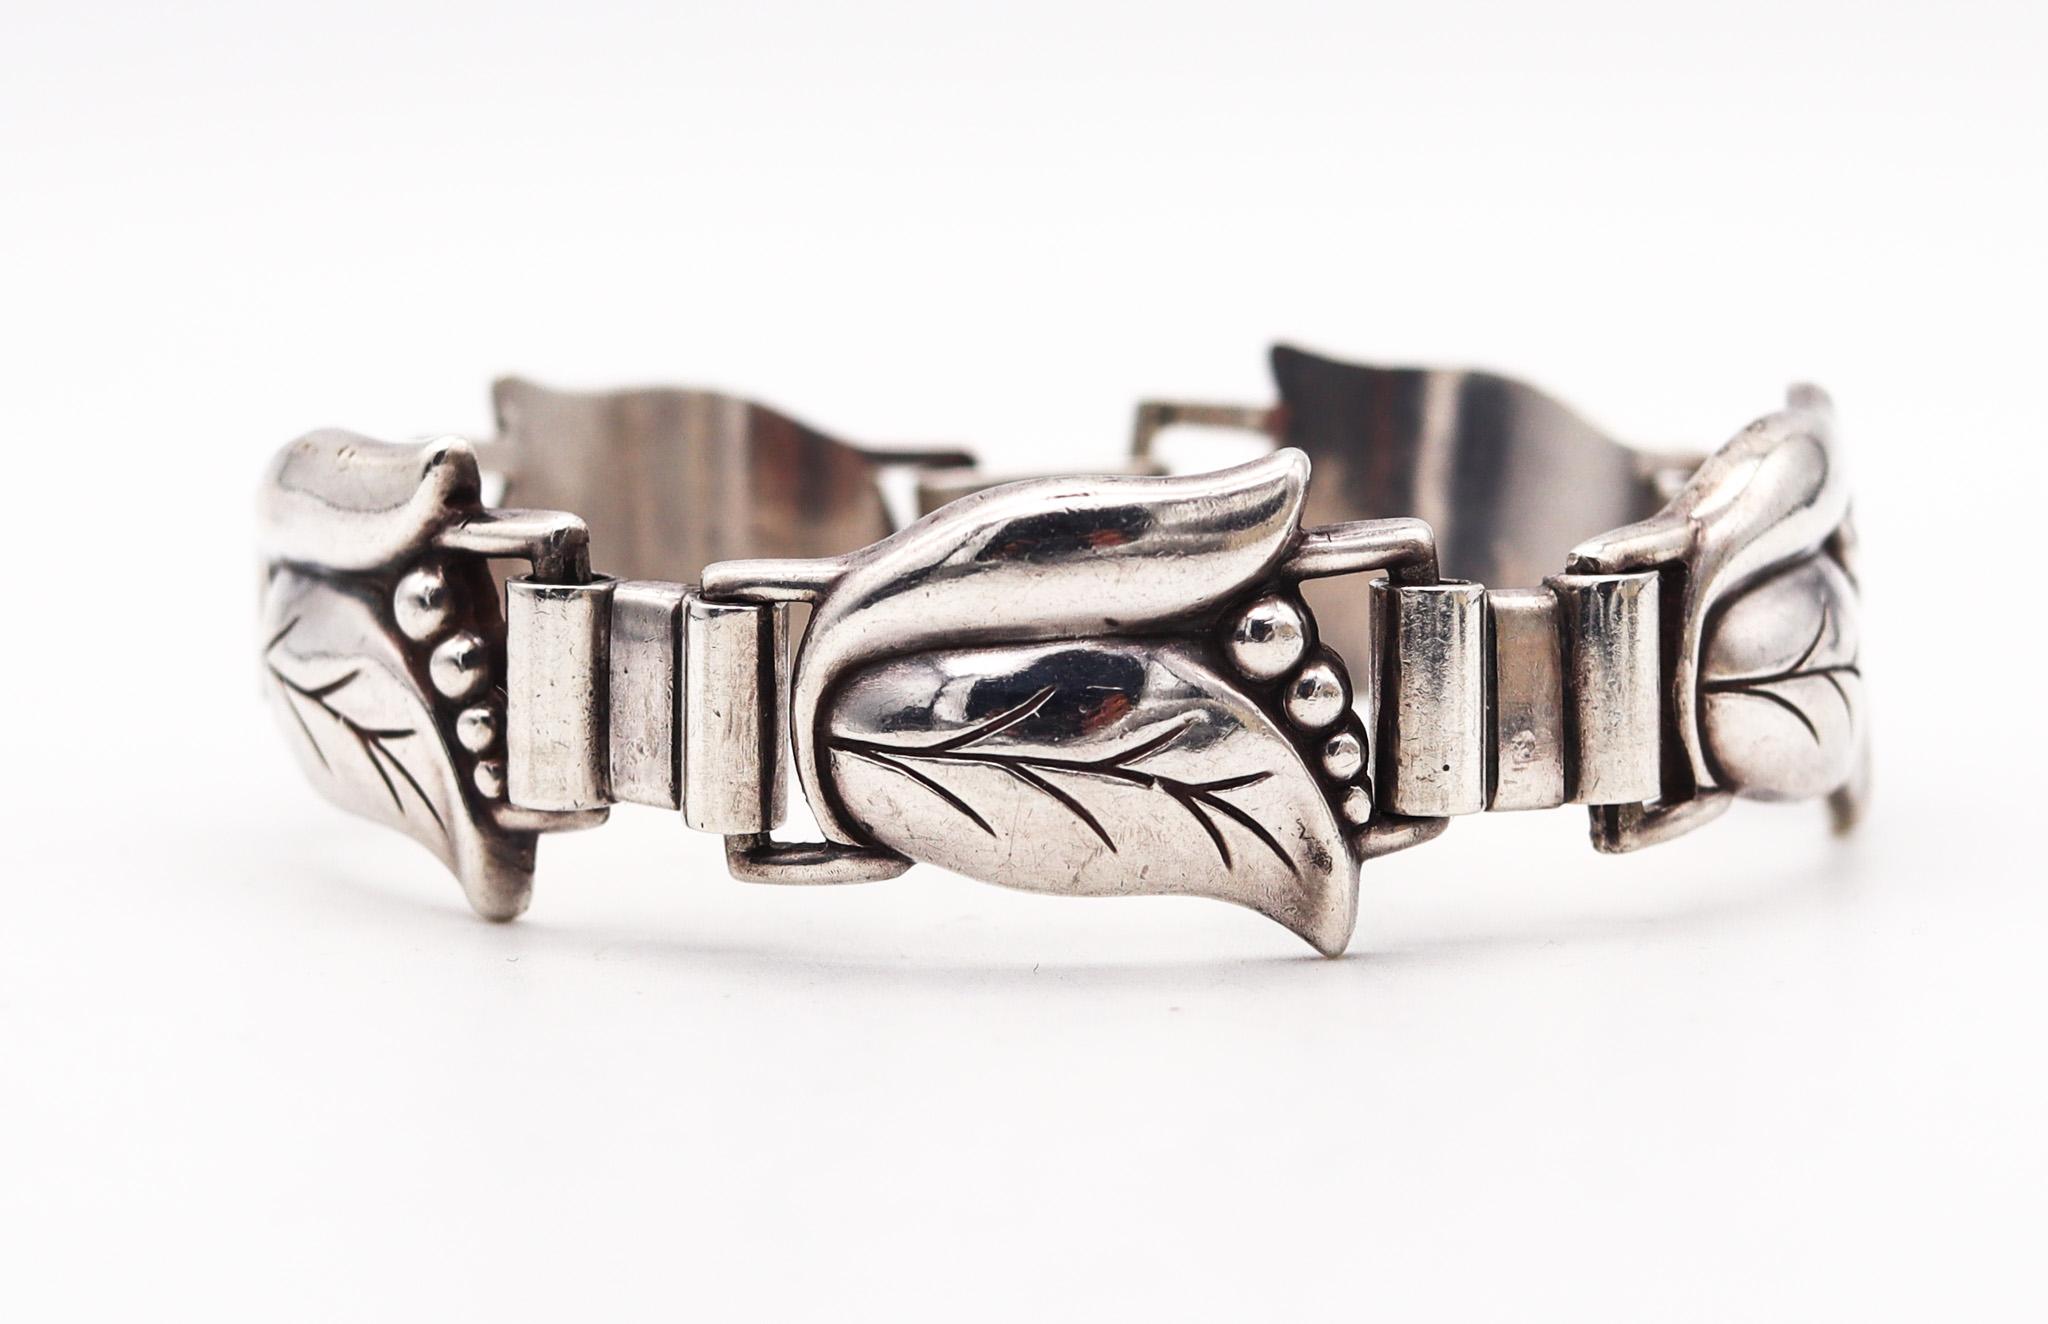 Bracelet Art déco conçu par Alphonse La Paglia pour Georg Jensen.

Il s'agit d'un magnifique bracelet, créé par l'orfèvre et designer Alphonse La Paglia pour la société Georg Jensen, dans les années 1940. Ce bracelet a été réalisé dans le style Art